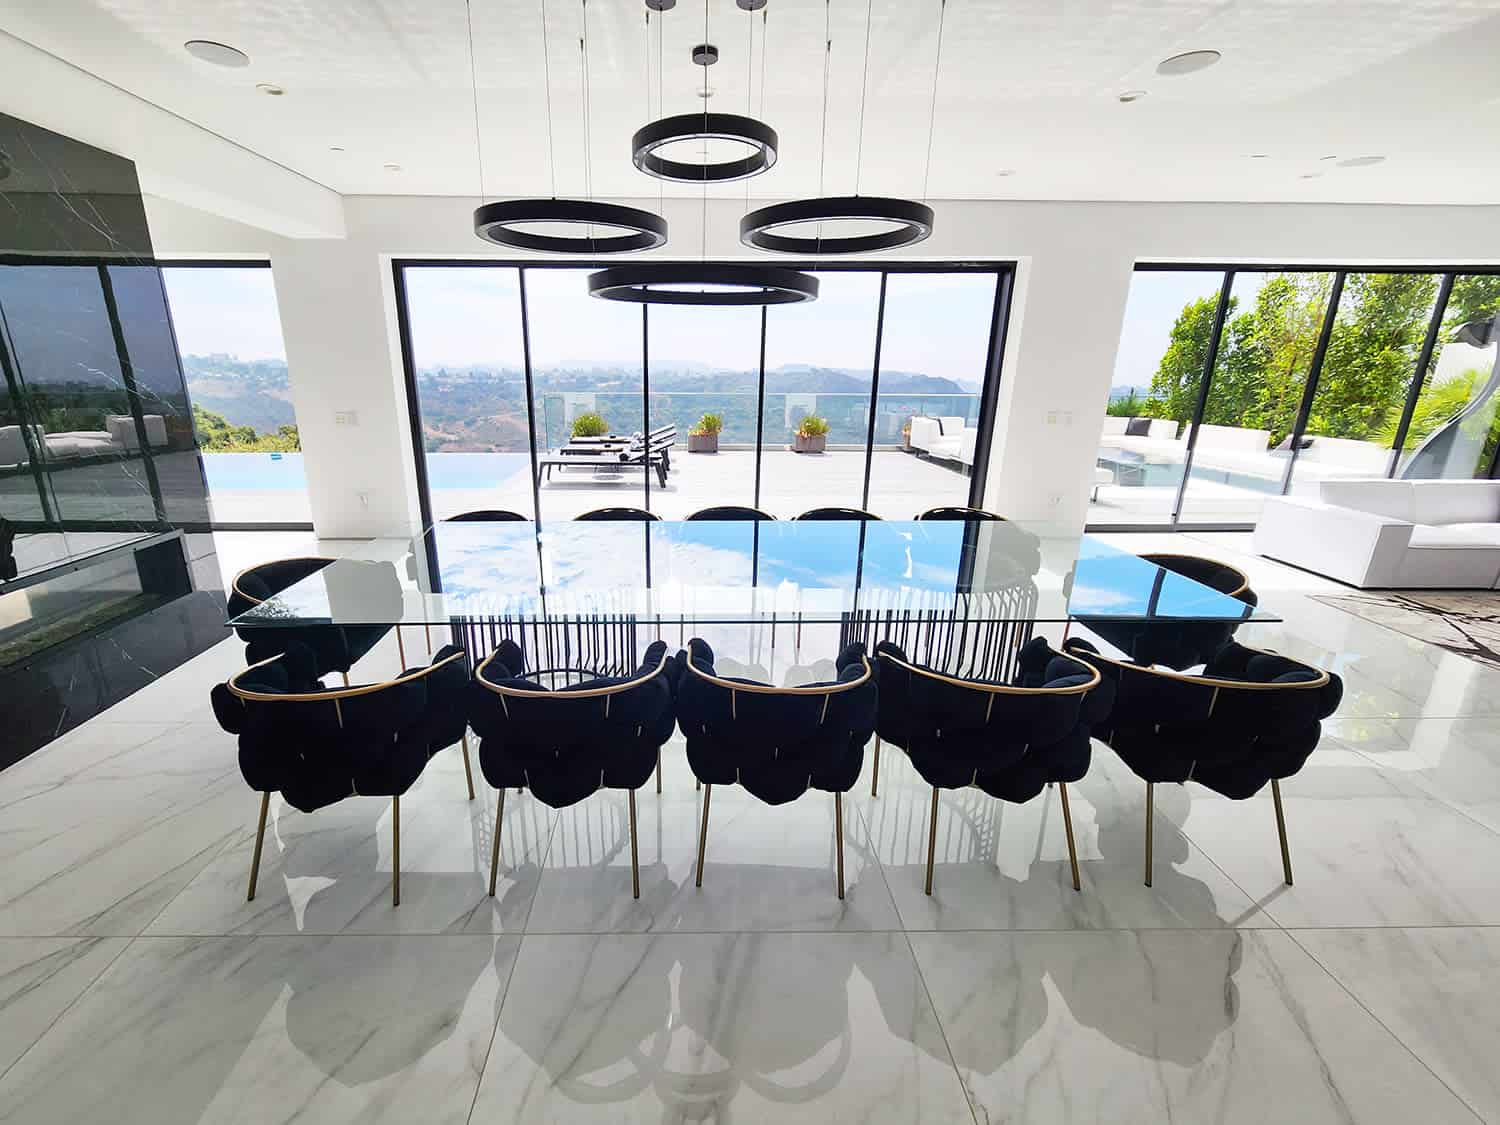 Modern luxury meeting space in Bel Air, Los Angeles, California